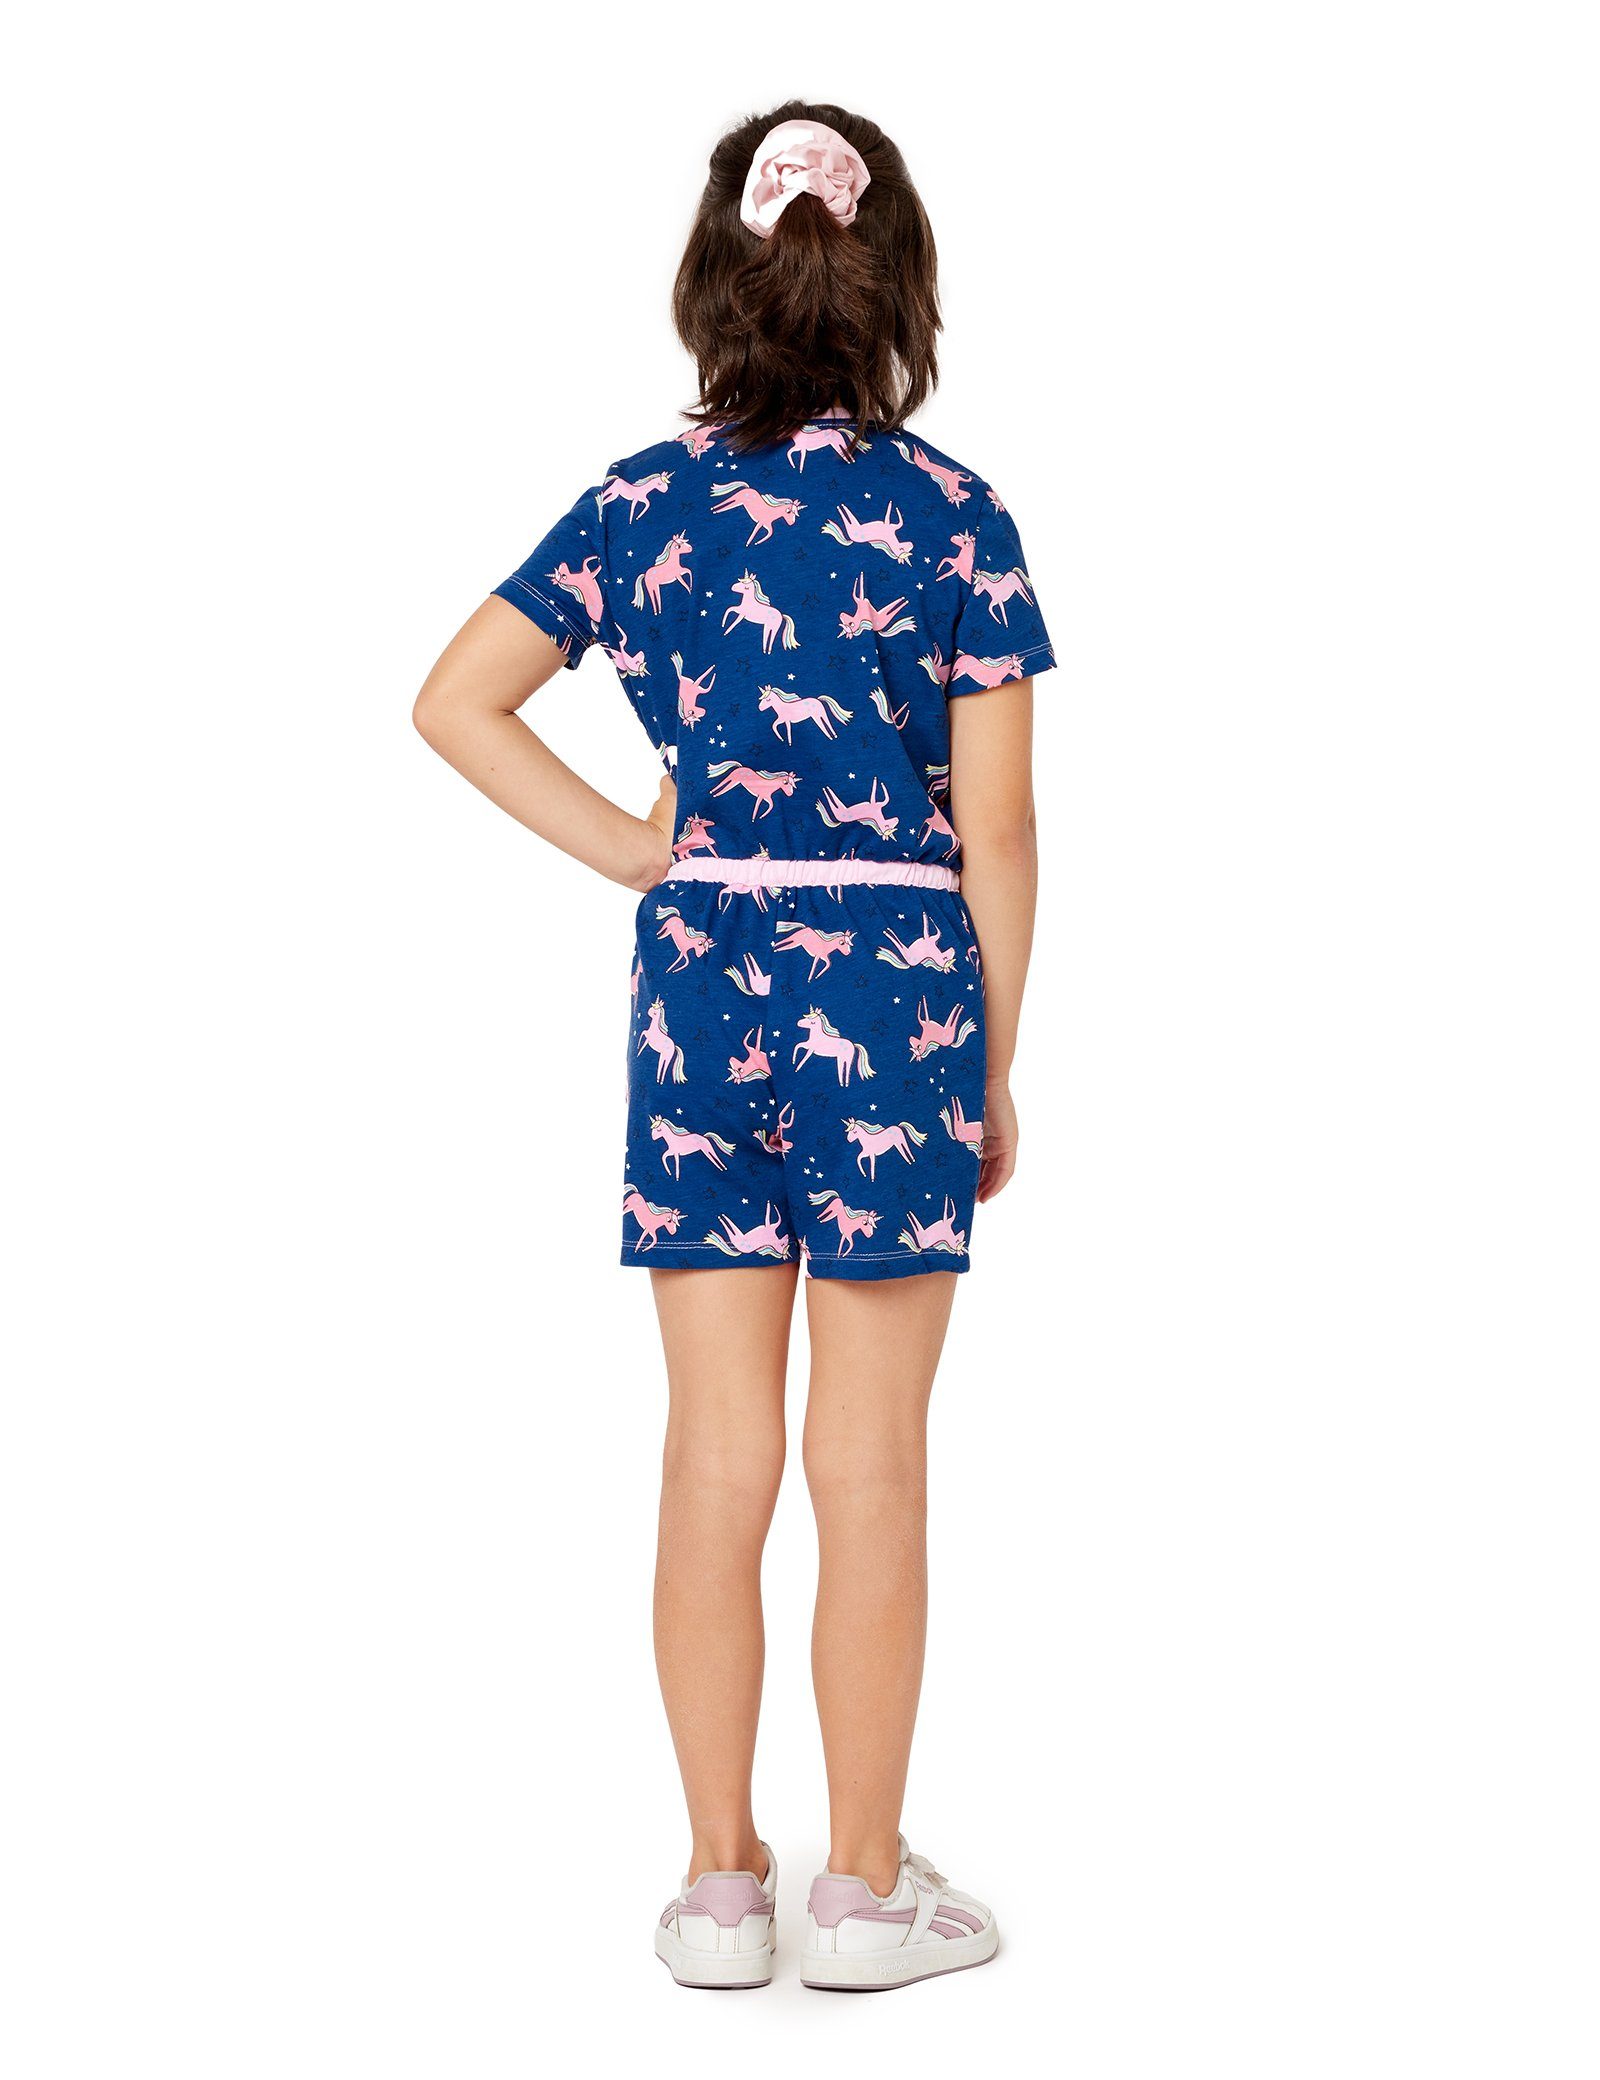 MS10-267 Short Merry Schlafanzug Marineblau/Einhorn Schlafanzug Overall Style Mädchen